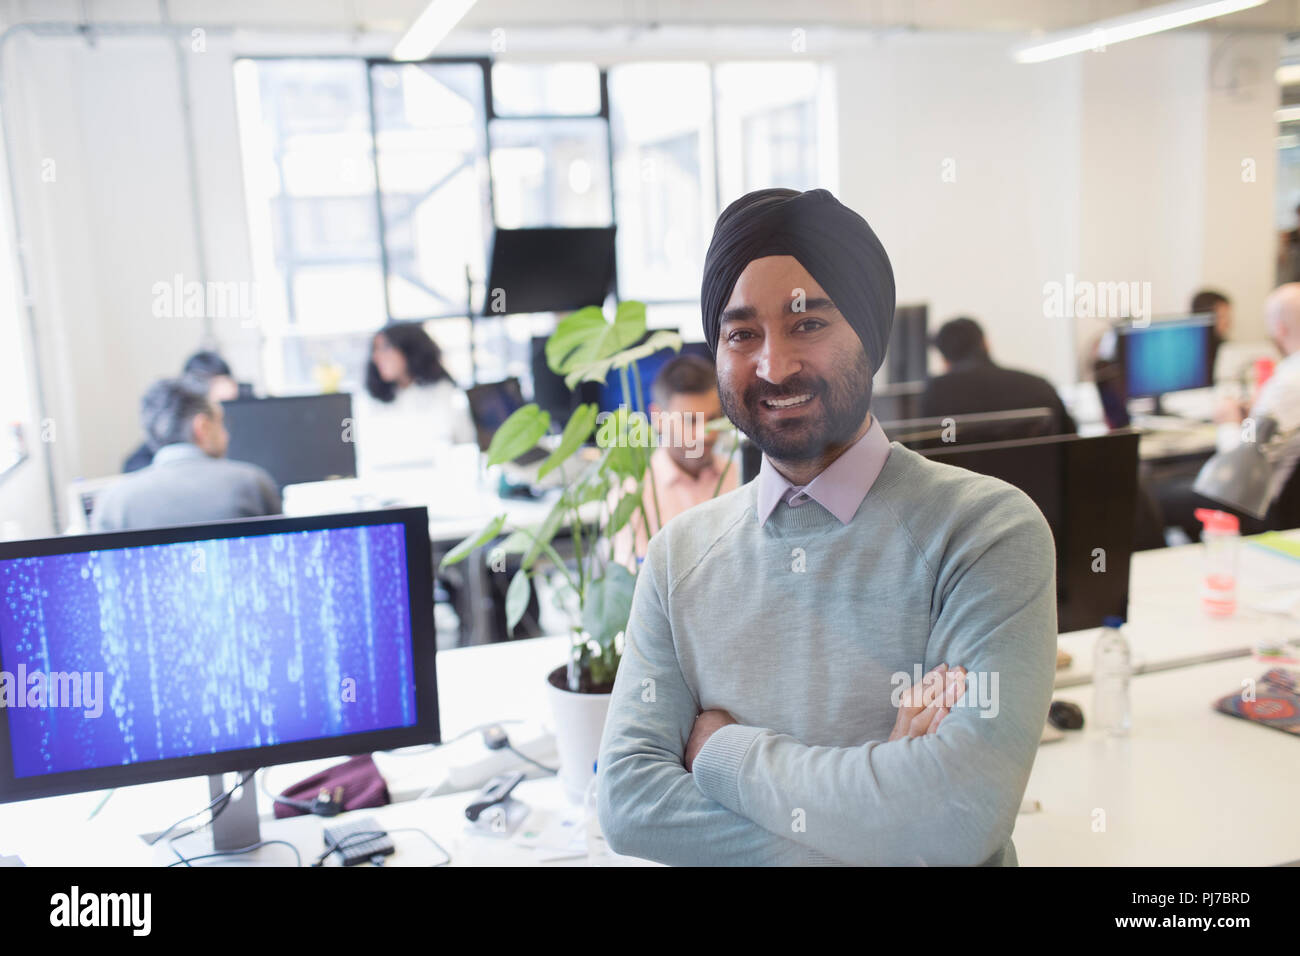 Porträt Lächeln, selbstbewussten indischen Programmierer in Turban im Büro Stockfoto